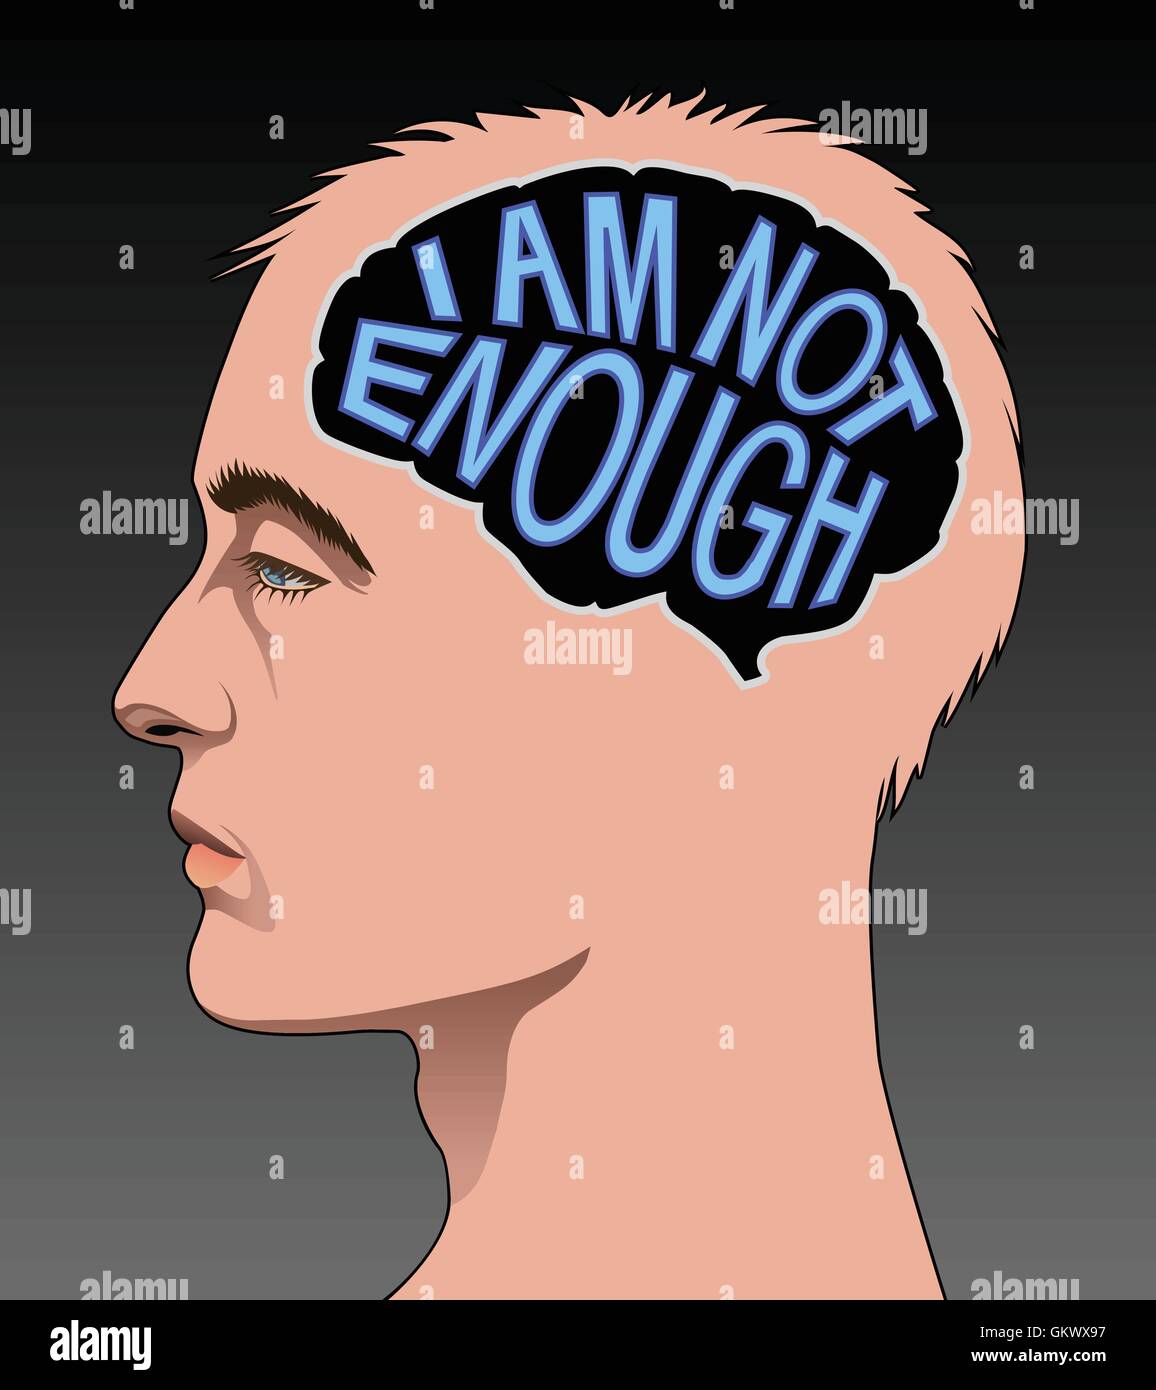 Männliche Profil mit einem Gehirn, bestehend aus den Worten "Ich bin nicht genug" zur Veranschaulichung geringes Selbstwertgefühl. Stock Vektor